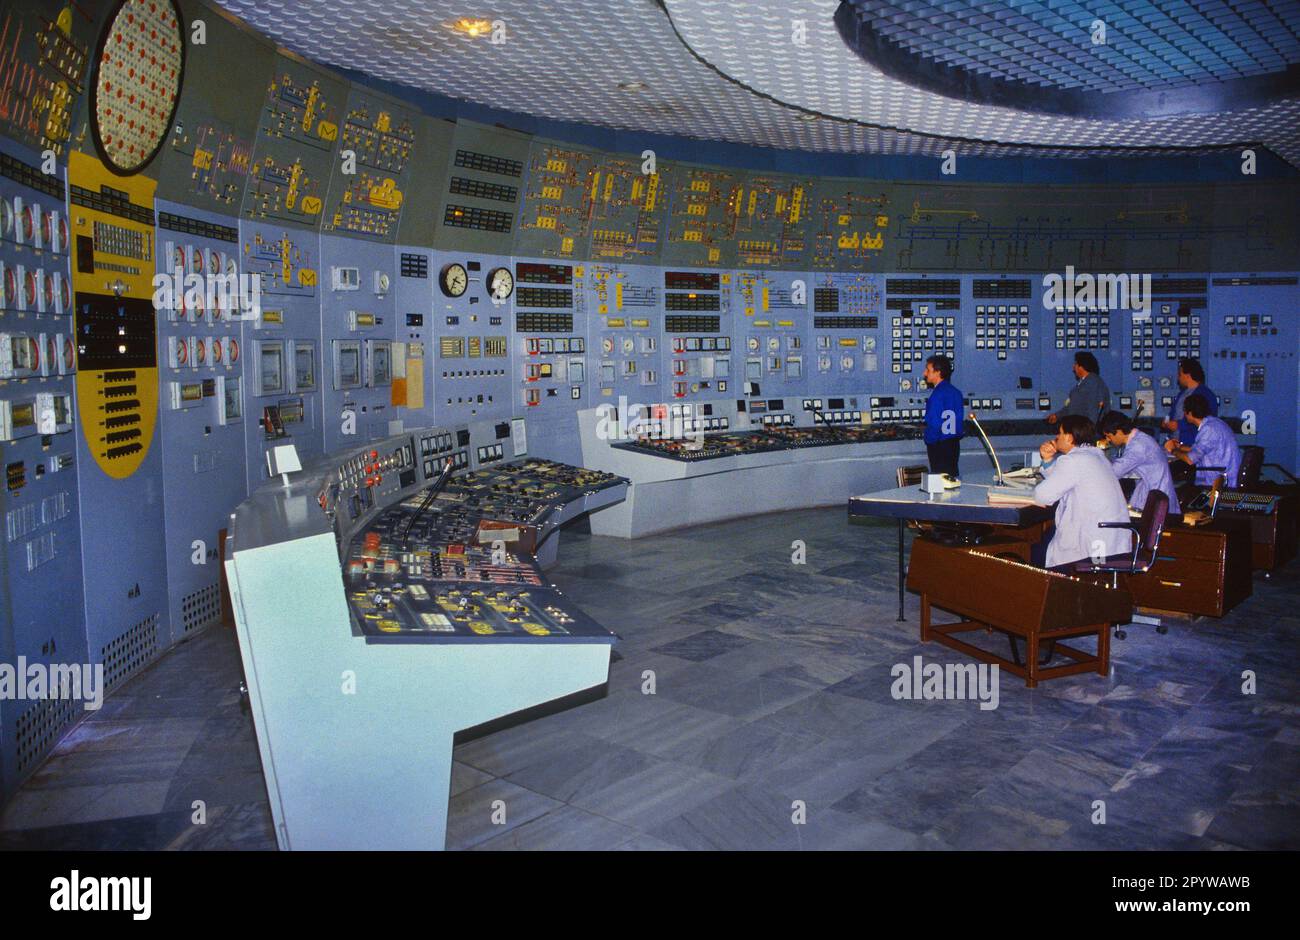 Bulgarien, Kosloduj, 13.11.1991 Kernkraftwerk Kosloduj Foto: Techniker im Reaktorkontrollraum von Block 2 des Kernkraftwerks Kosloduj in Bulgarien. Die Blöcke 1 und 2 wurden bereits Ende 2002 abgeschaltet. [Maschinelle Übersetzung] Stockfoto